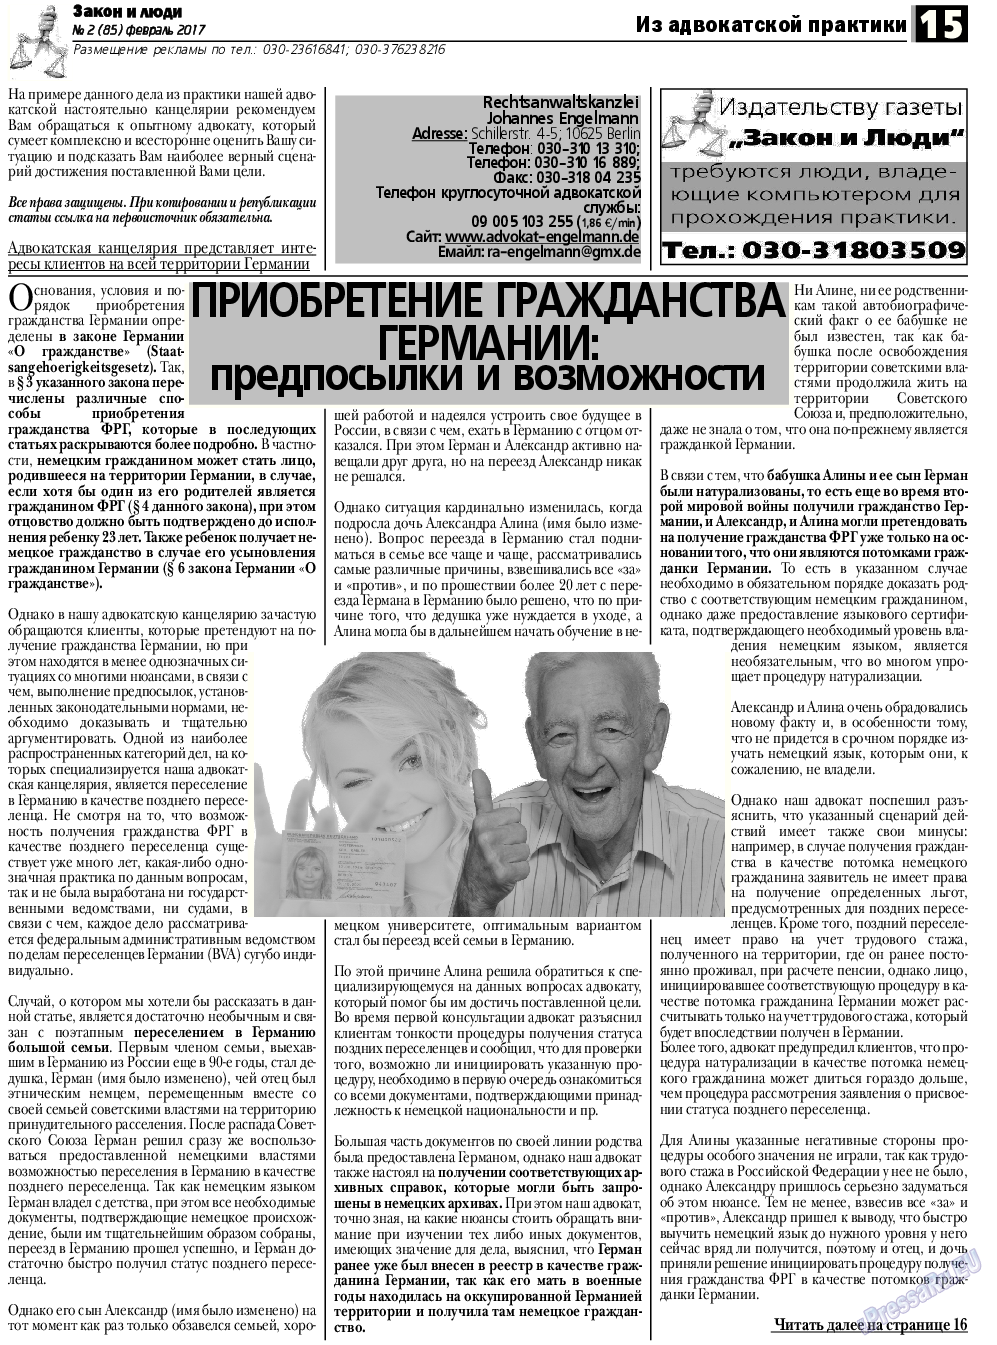 Закон и люди, газета. 2017 №2 стр.15